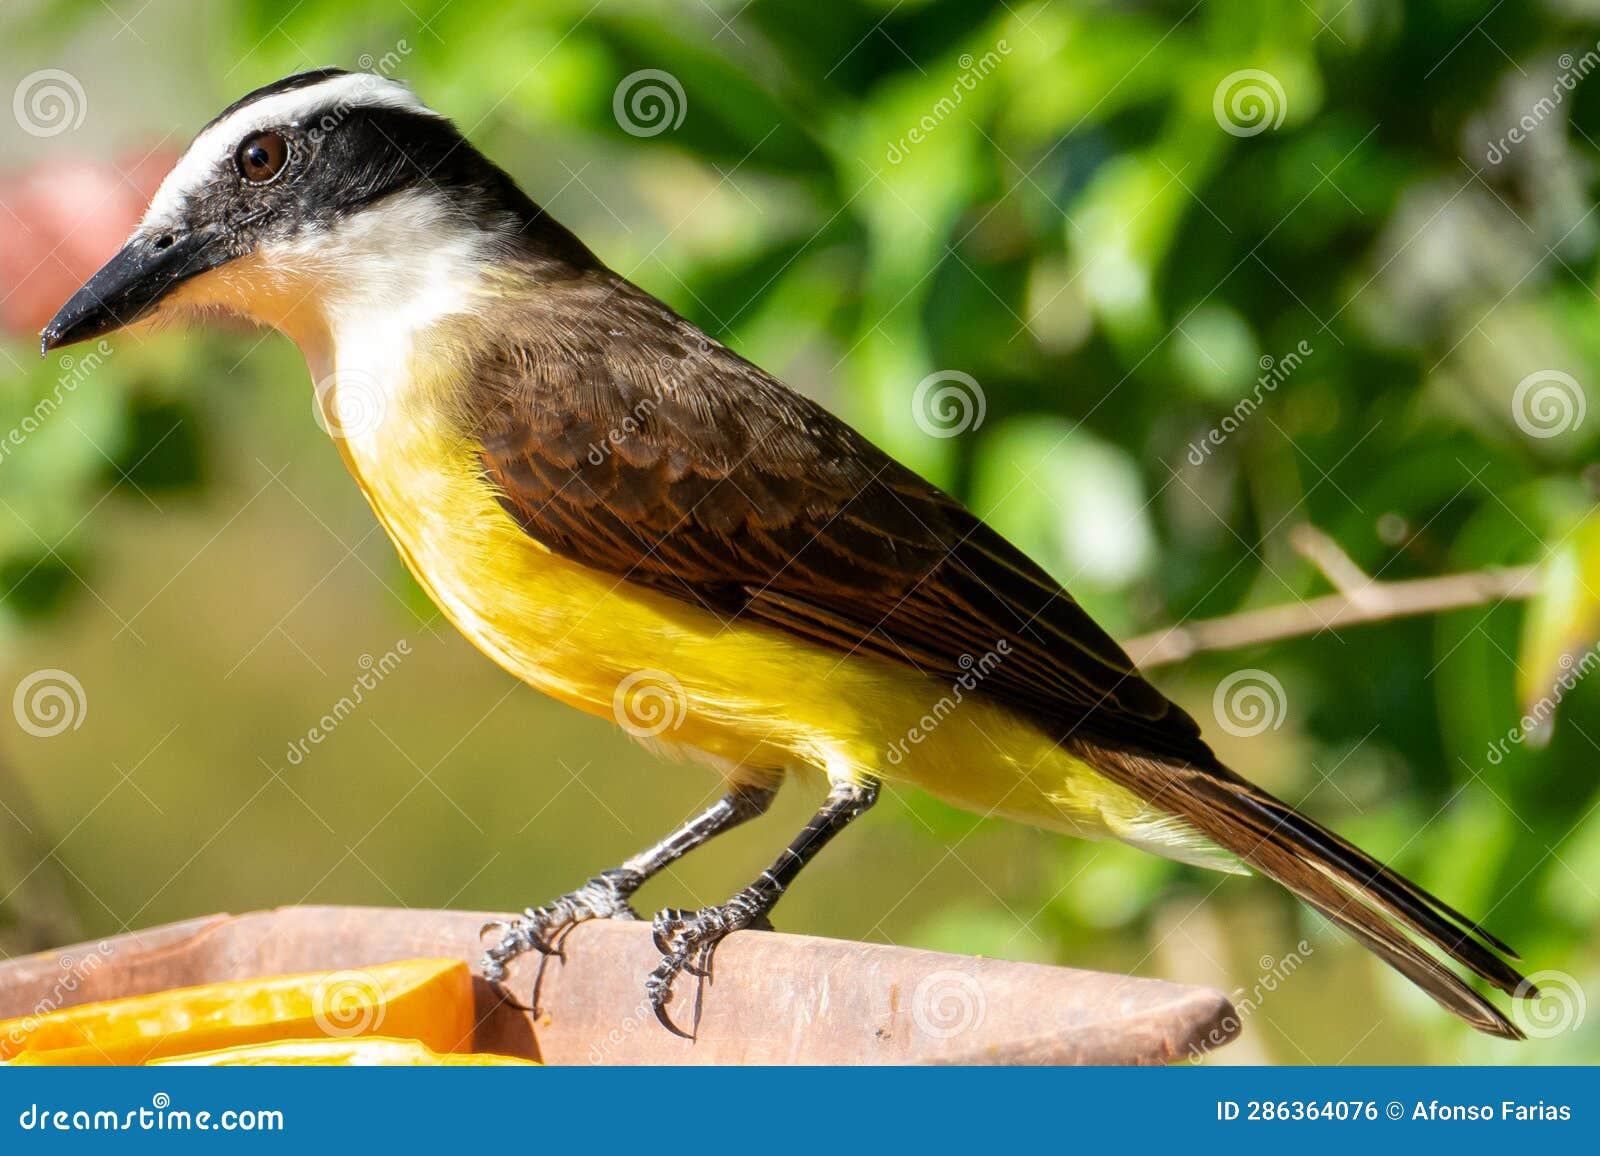 the great kiskadee (pitangus sulphuratus) is a passerine bird in the tyrant flycatcher family tyrannidae, it .